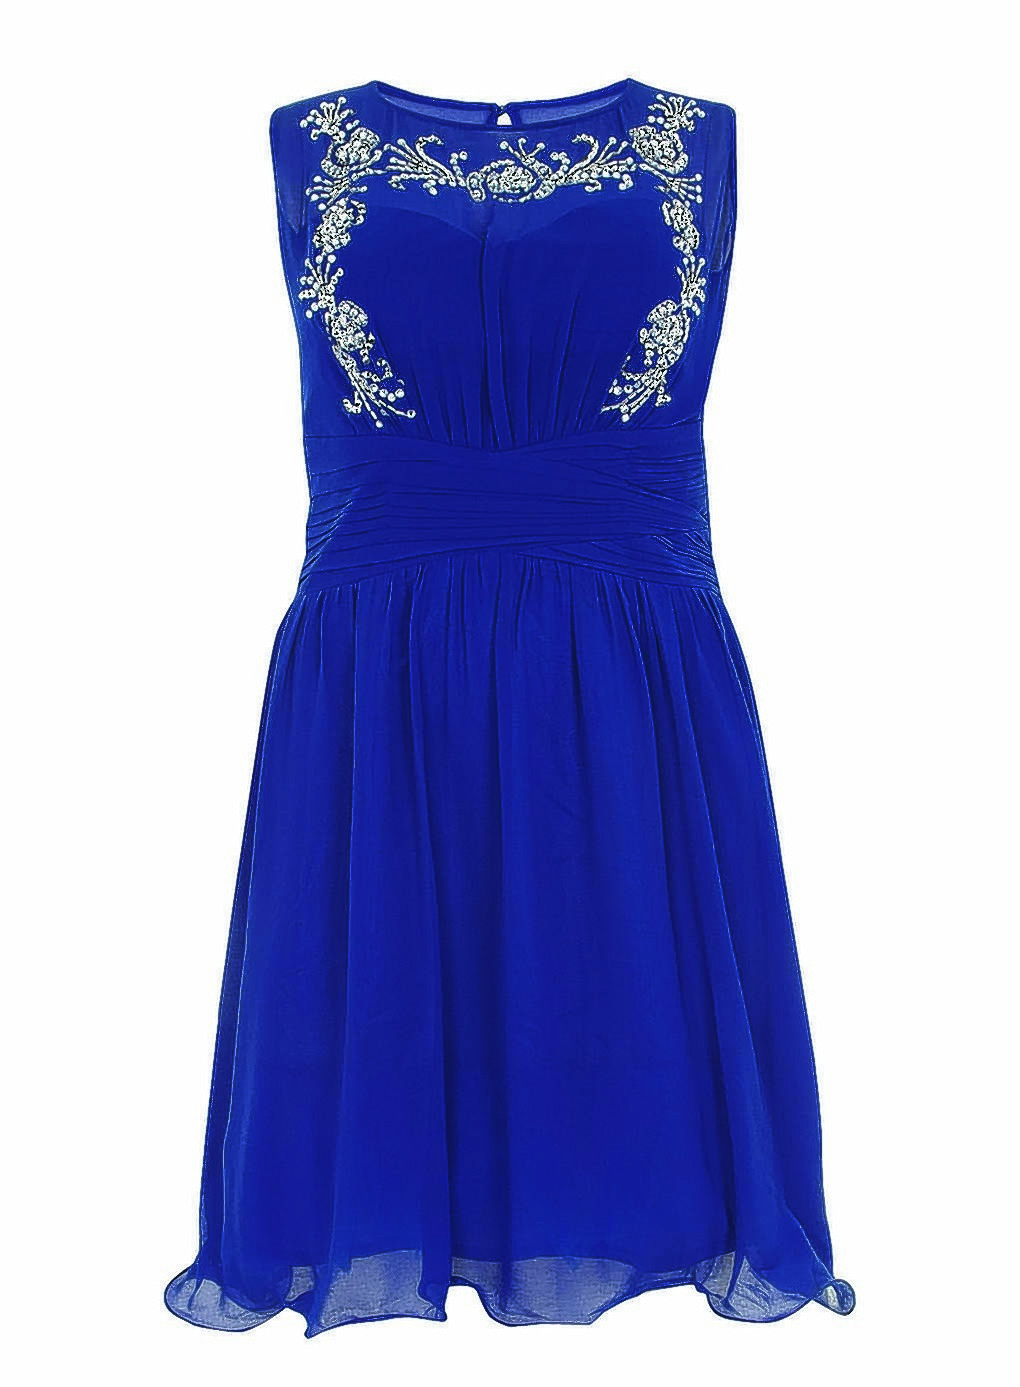 :: Little Mistress Blue Embellished Dress, £60 (www.evans.co.uk)